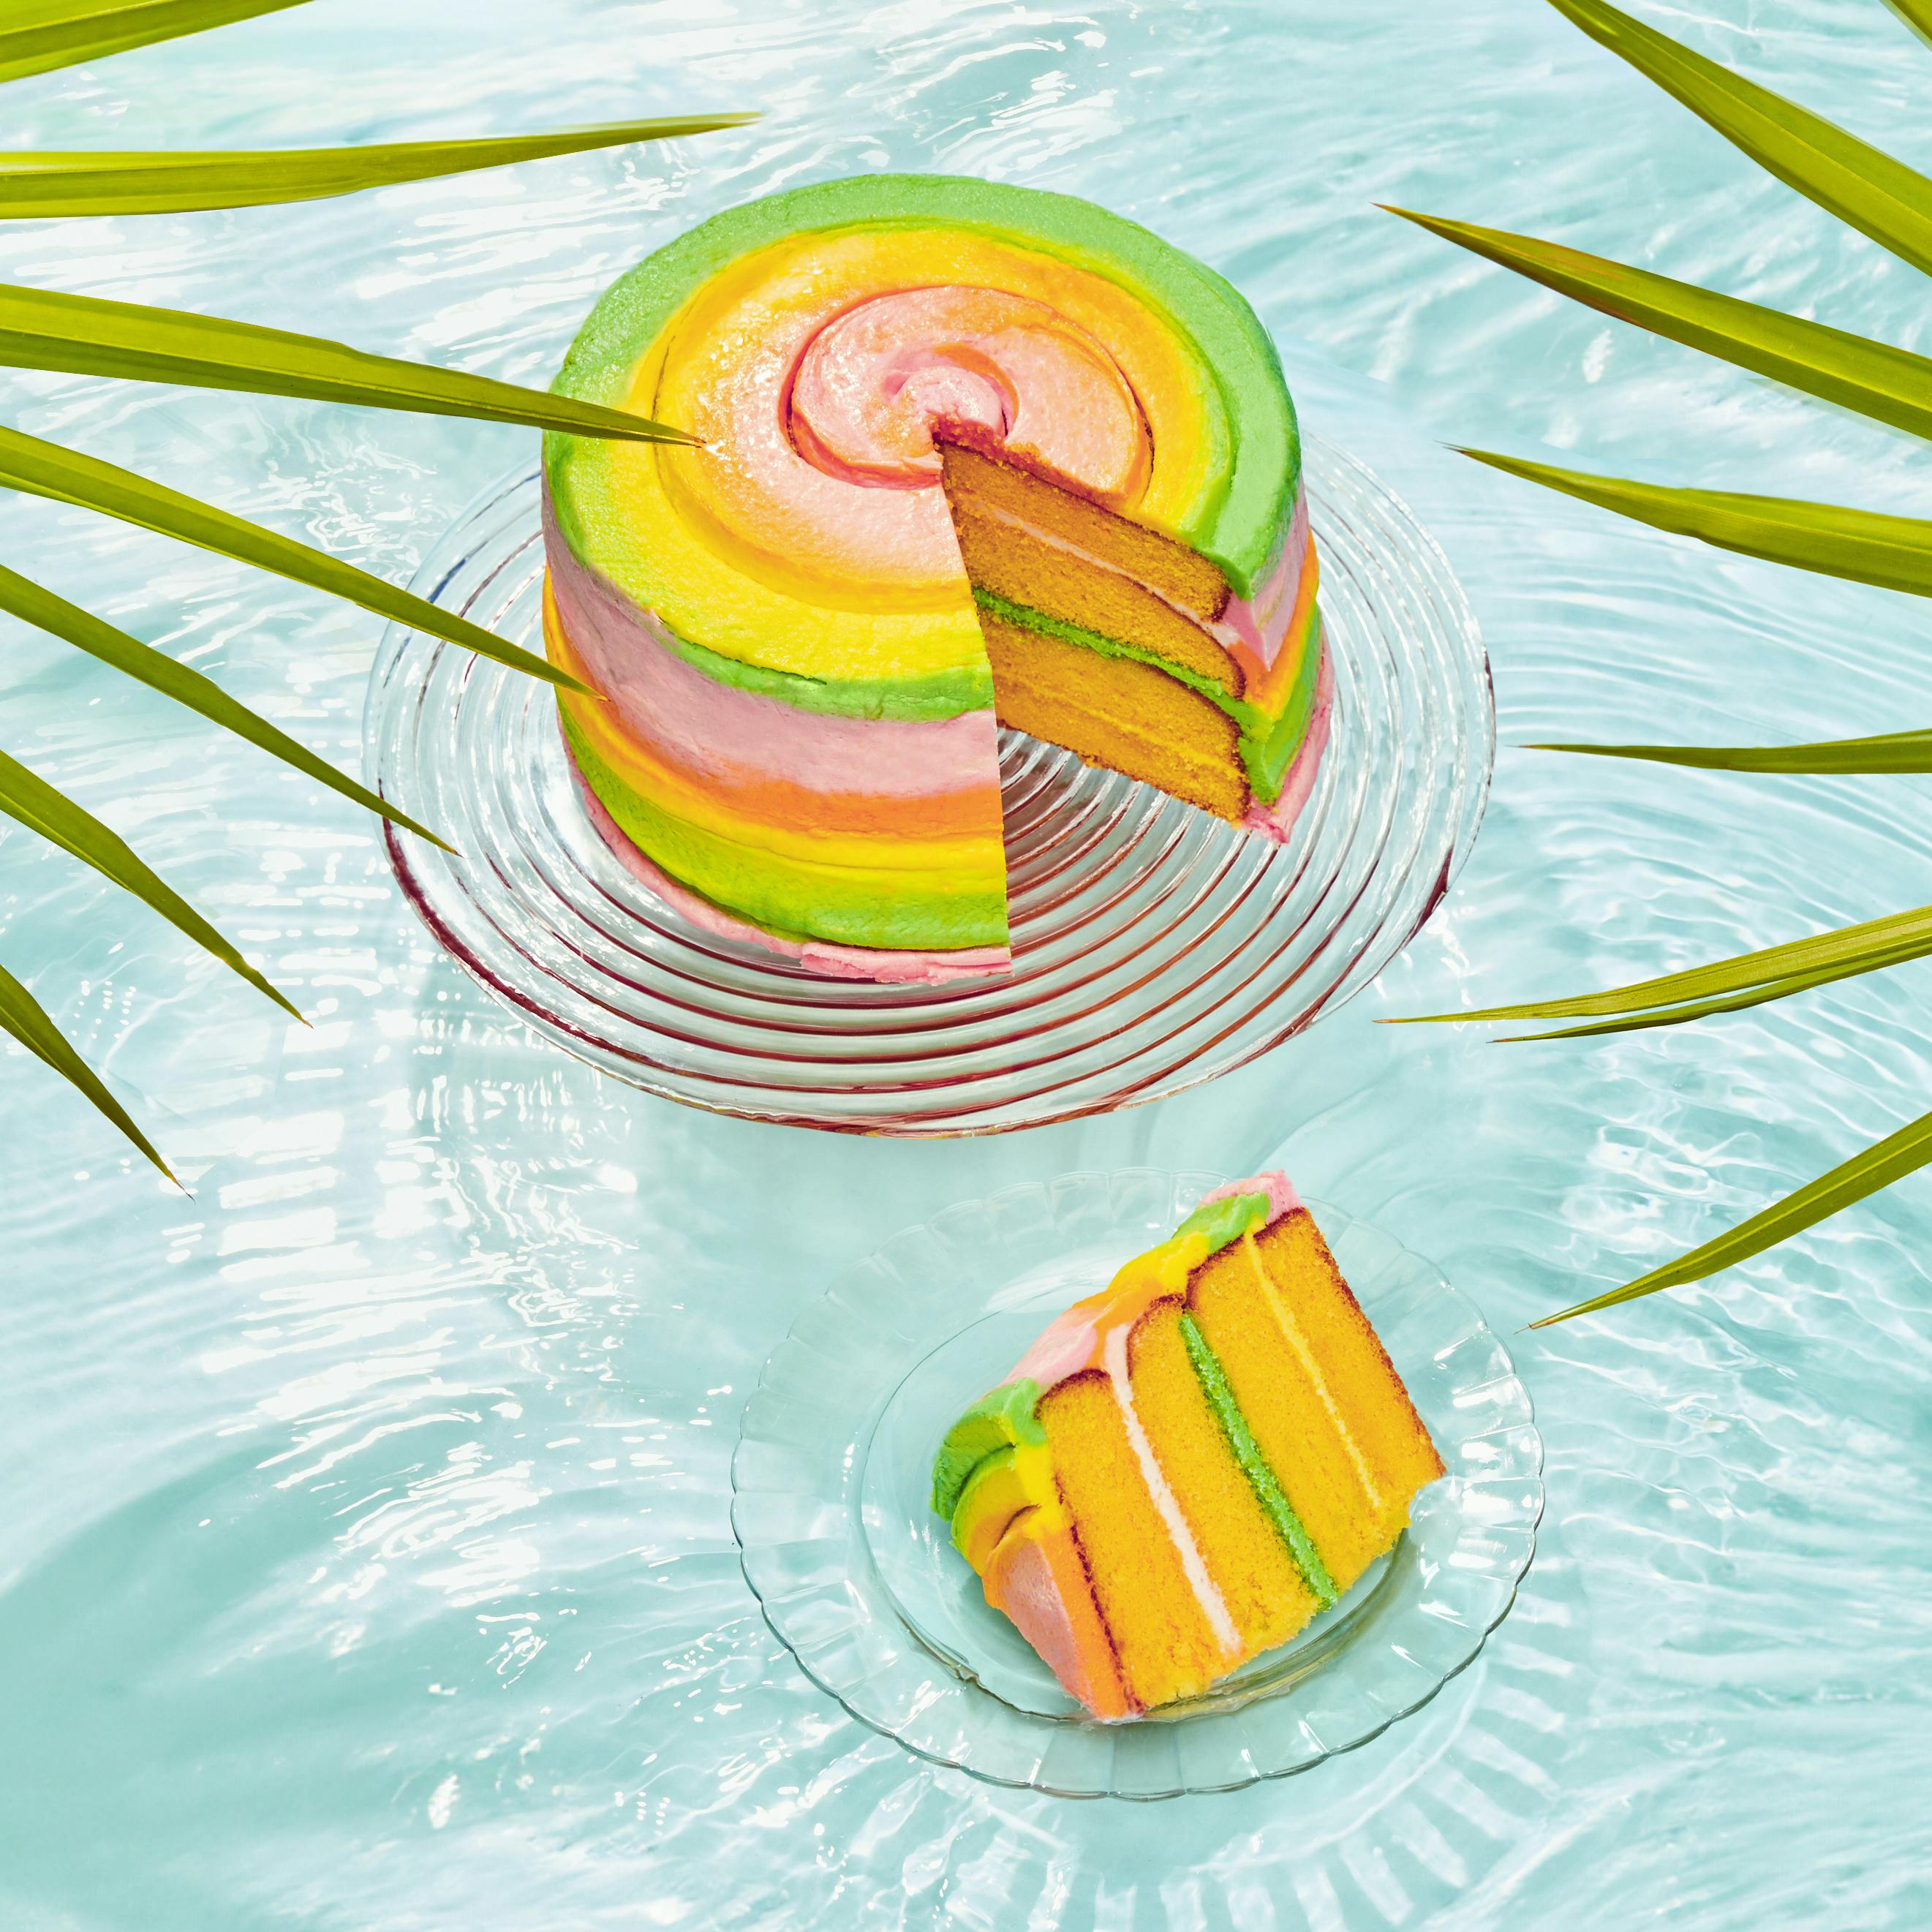 Rainbow Layer Cake – Fiesta Blog